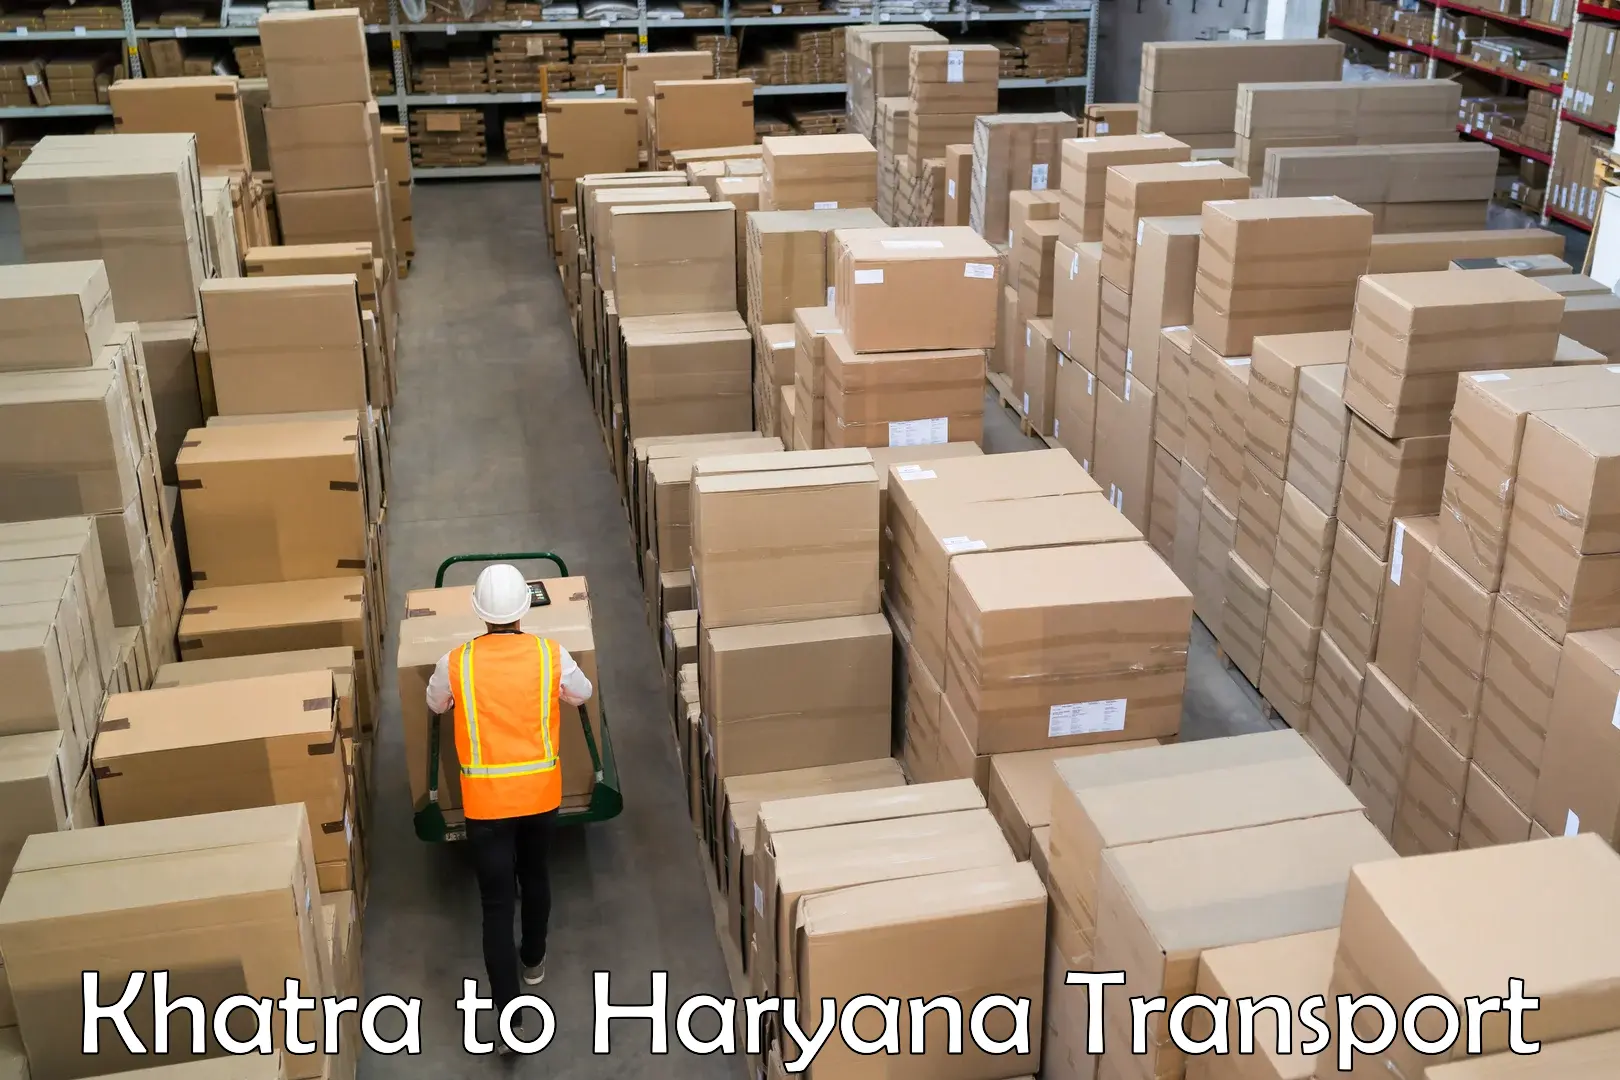 Furniture transport service Khatra to Kurukshetra